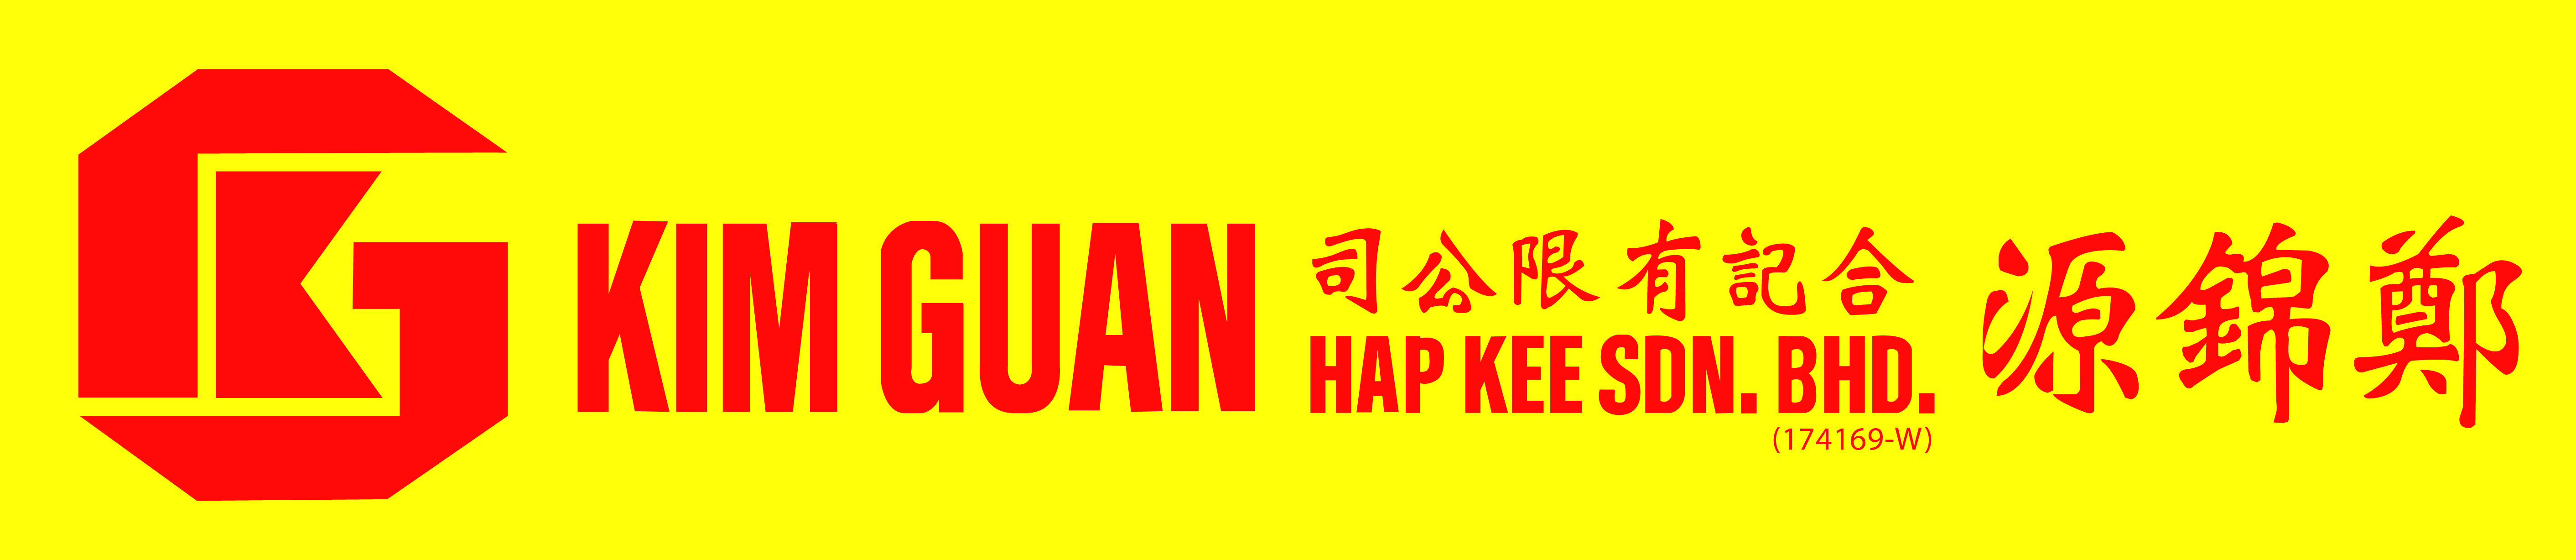 Kim Guan Hap Kee Sdn Bhd (174169-W)